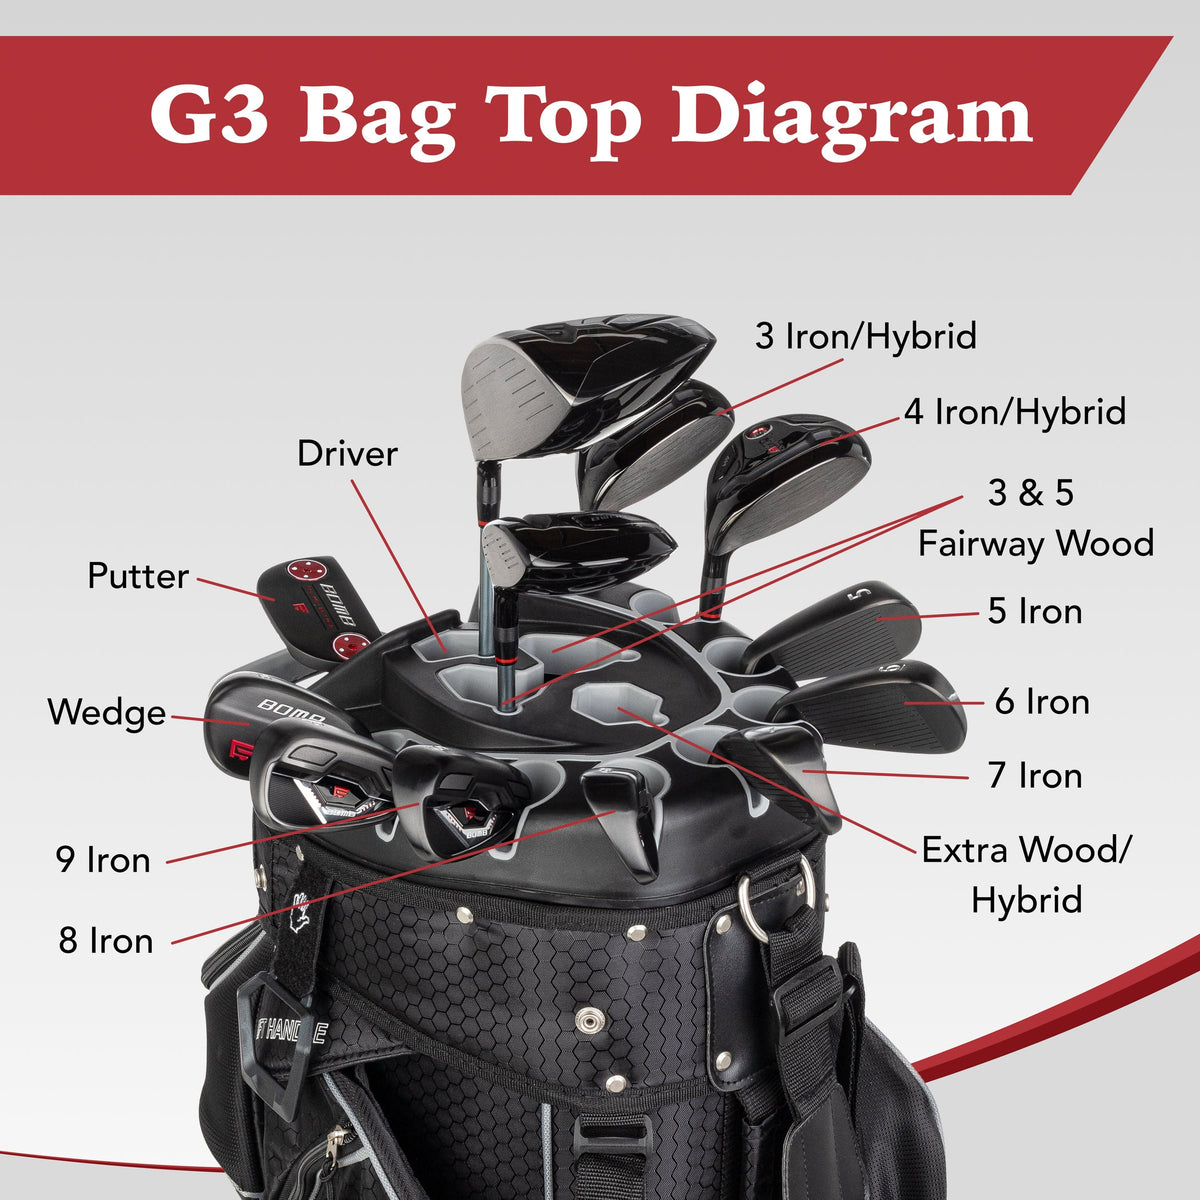 Founders Club Premium Organizer 14 Way Golf Cart Bag - Blue